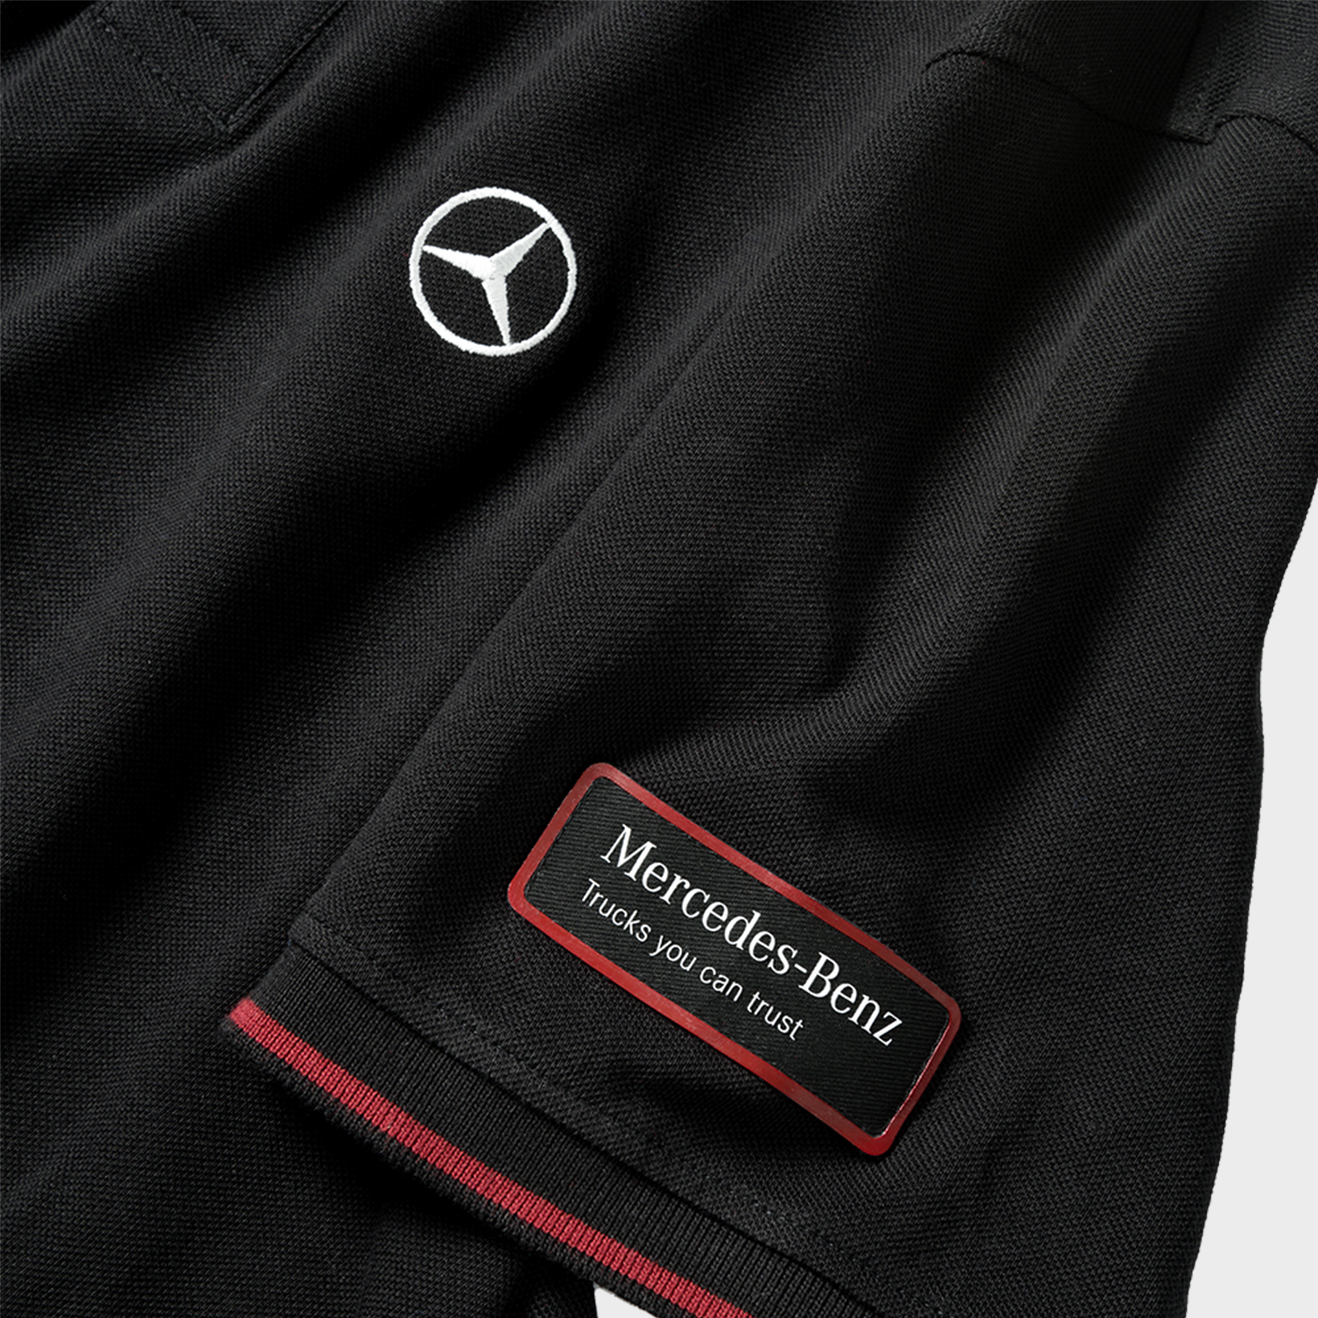 Mercedes-Benz Trucks Poloshirt, schwarz, mit Mercedes-Benz Stern auf der Brust